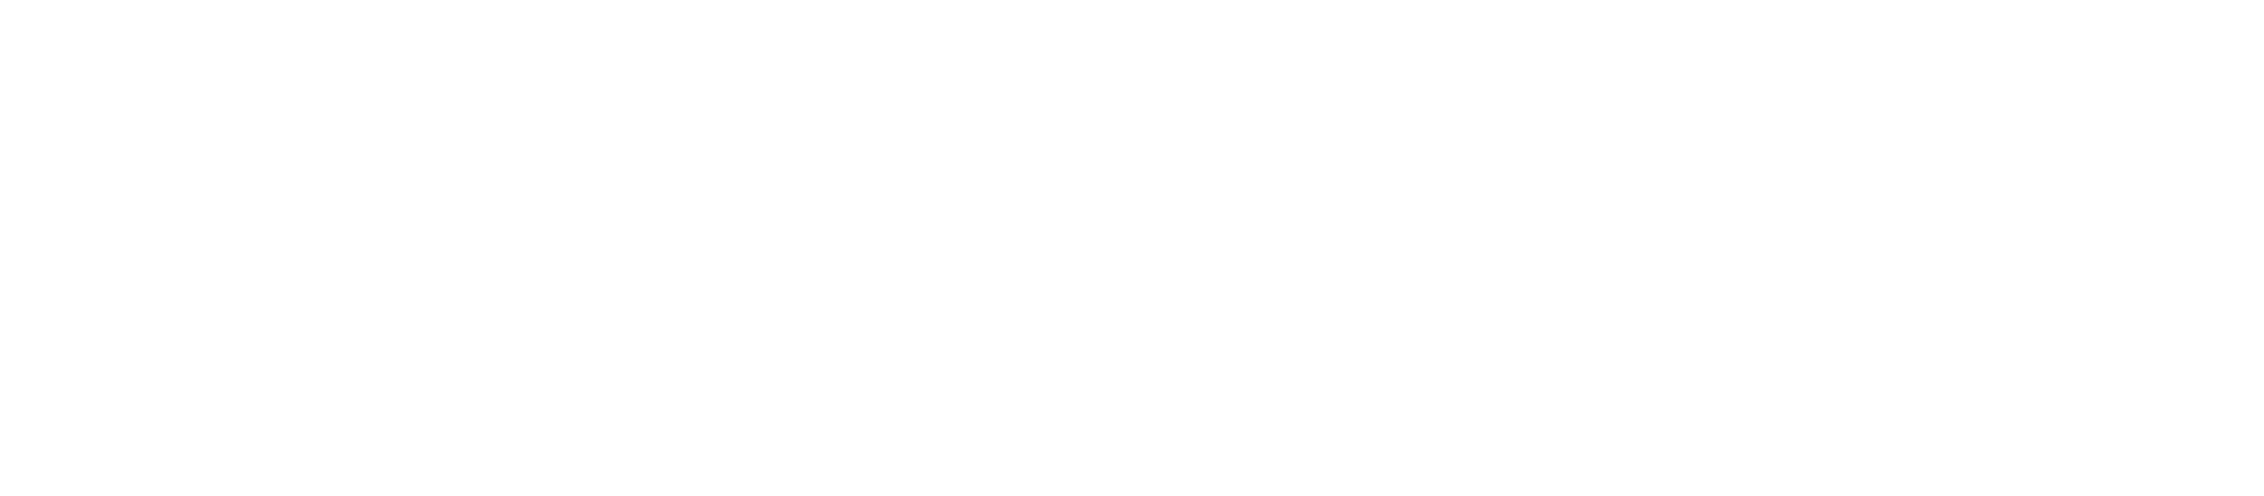 We Kinnect Global Branding Agency